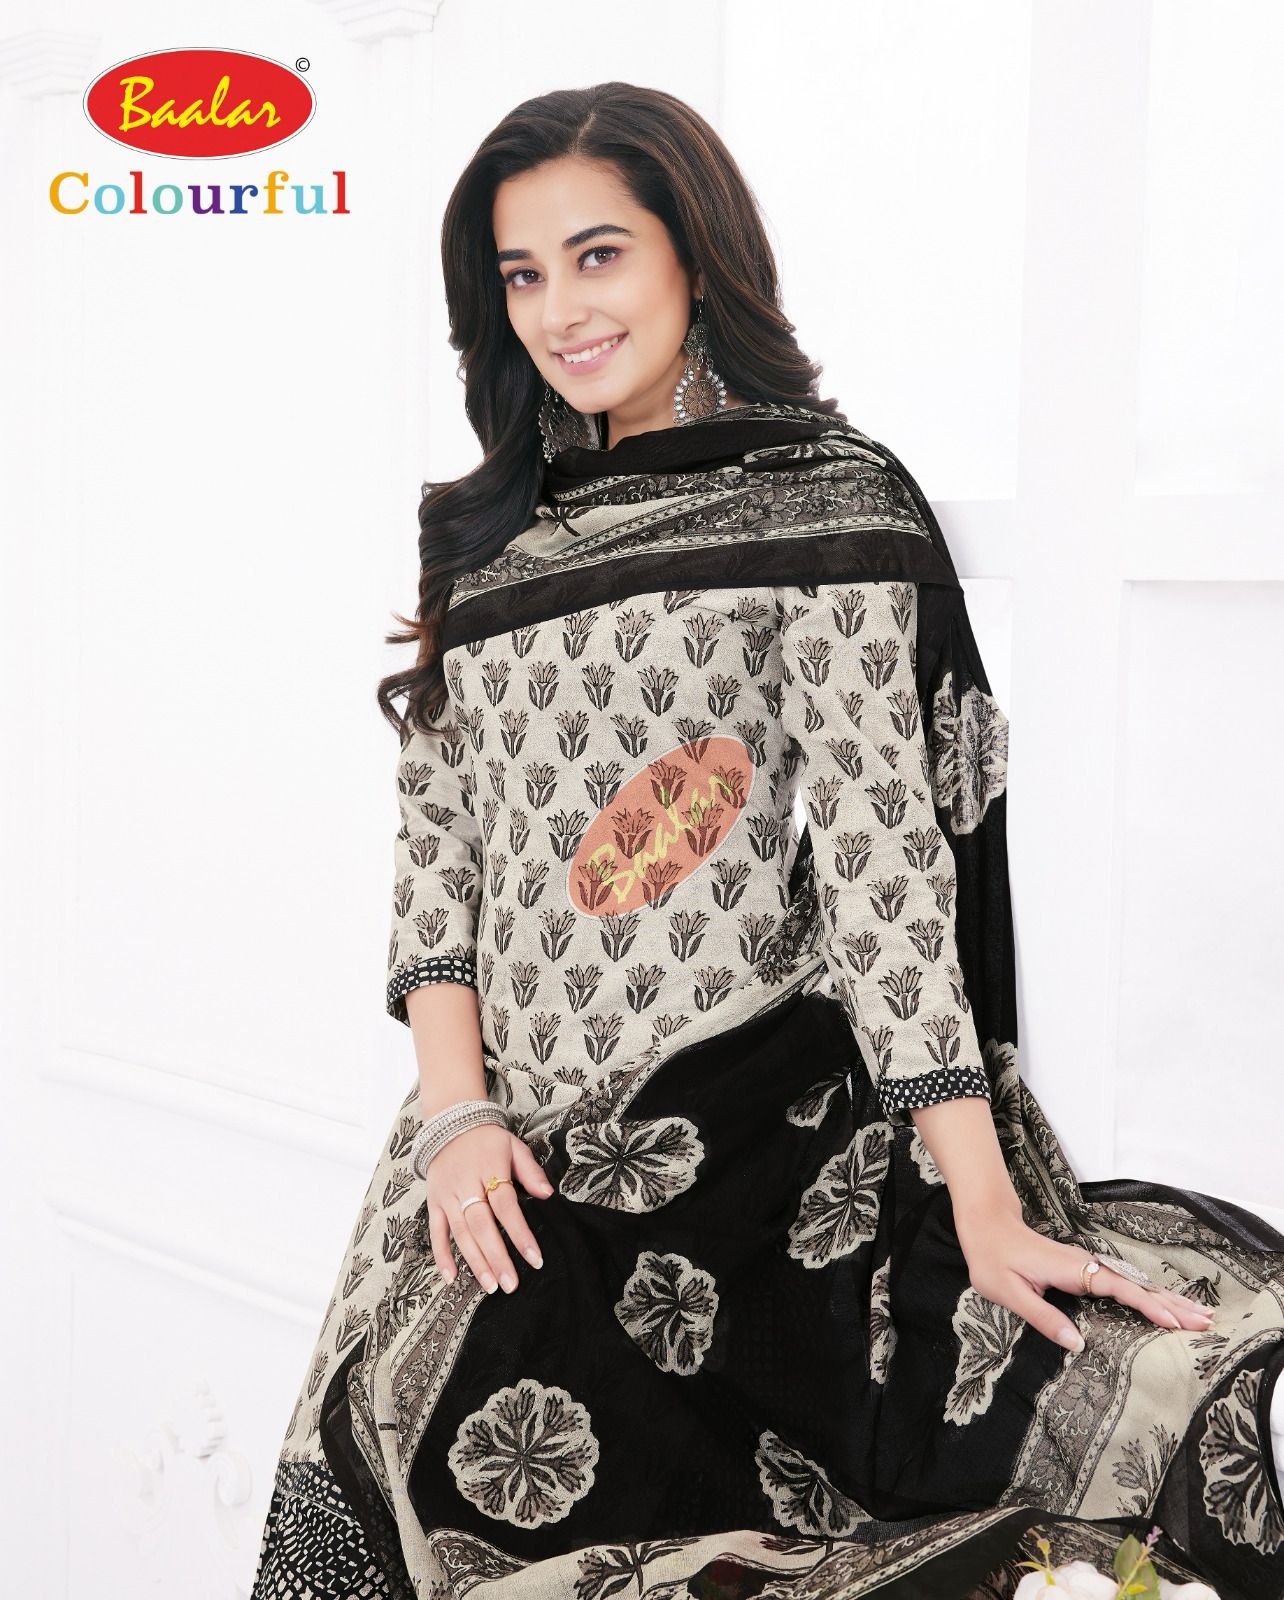 Baalar Colourful Vol-20 Wholesale Cotton Printed Patiyala Dress Material